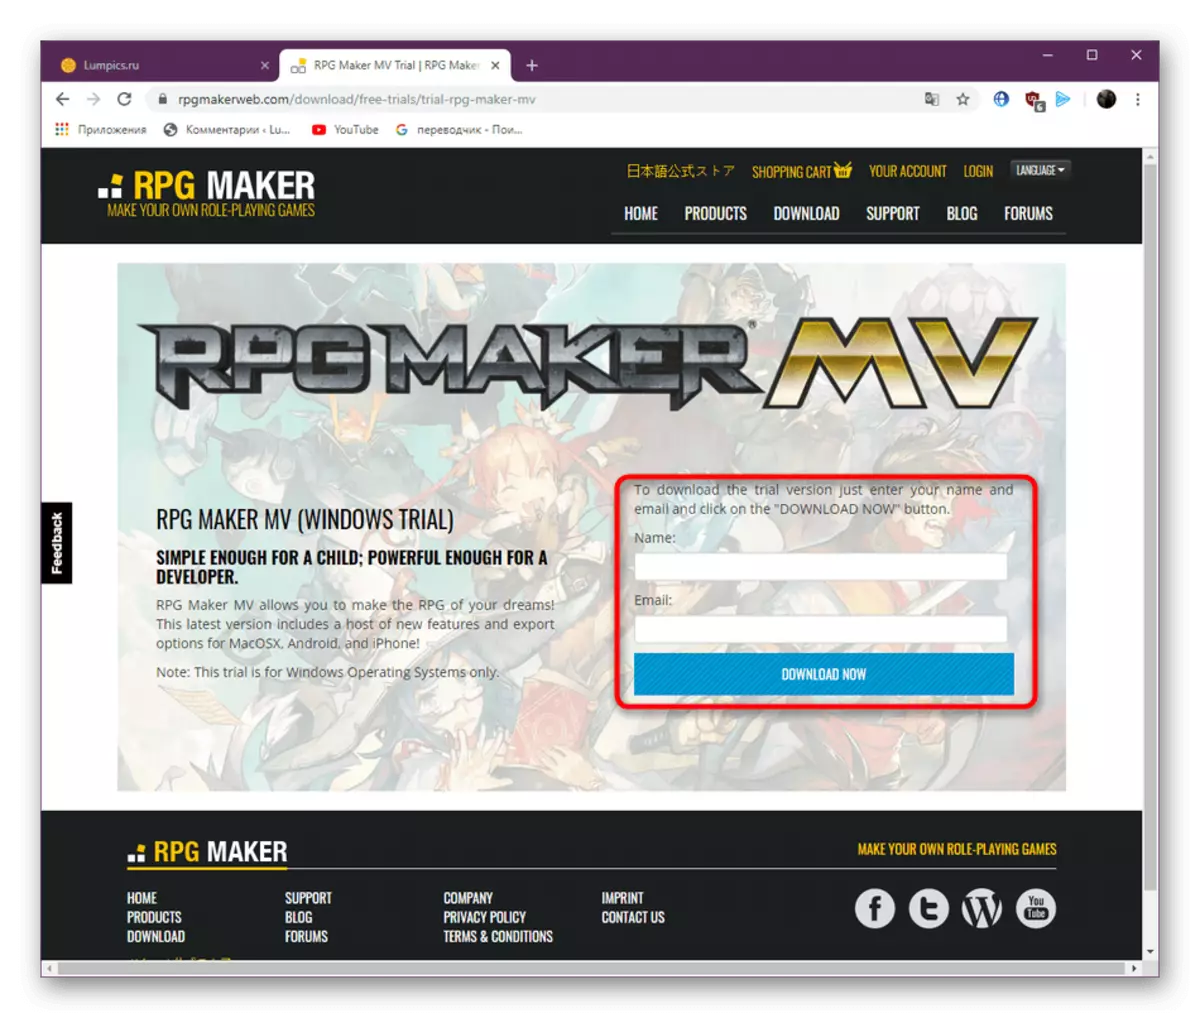 การลงทะเบียนบนเว็บไซต์อย่างเป็นทางการสำหรับการดาวน์โหลด RPG Maker